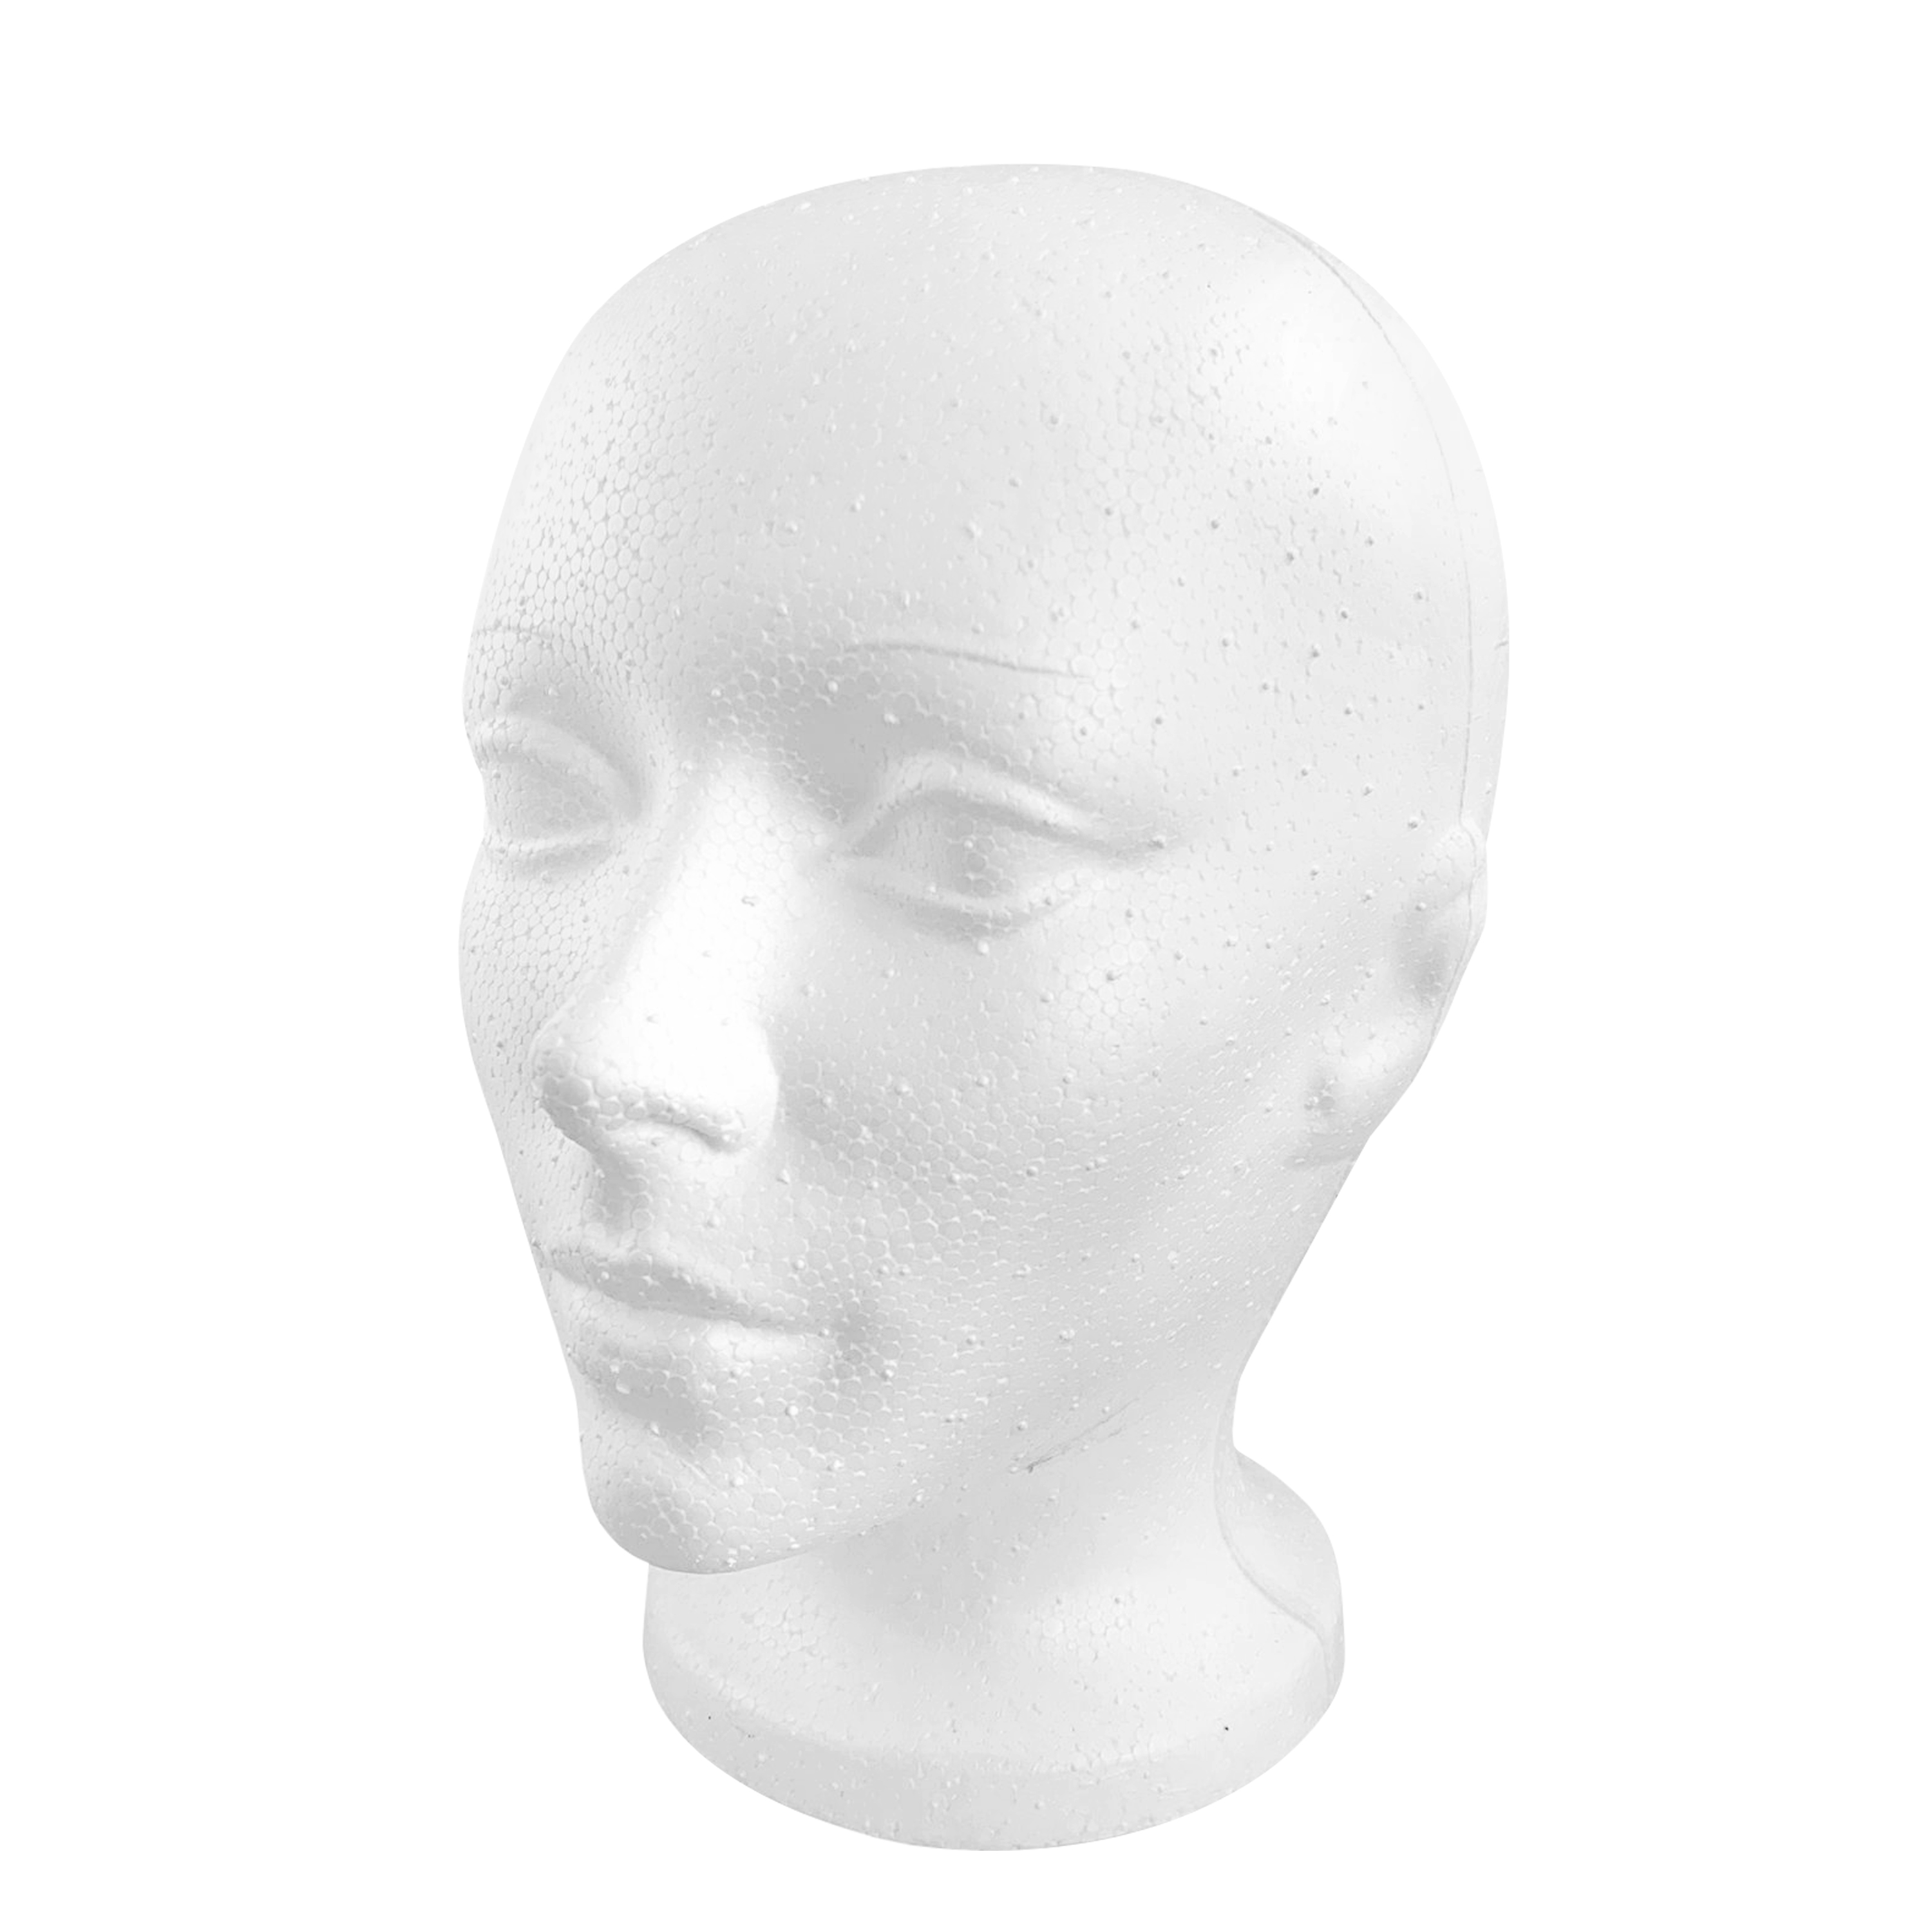 OLé Designs Female Foam Mannequin Wig Head - Styrofoam Manikin